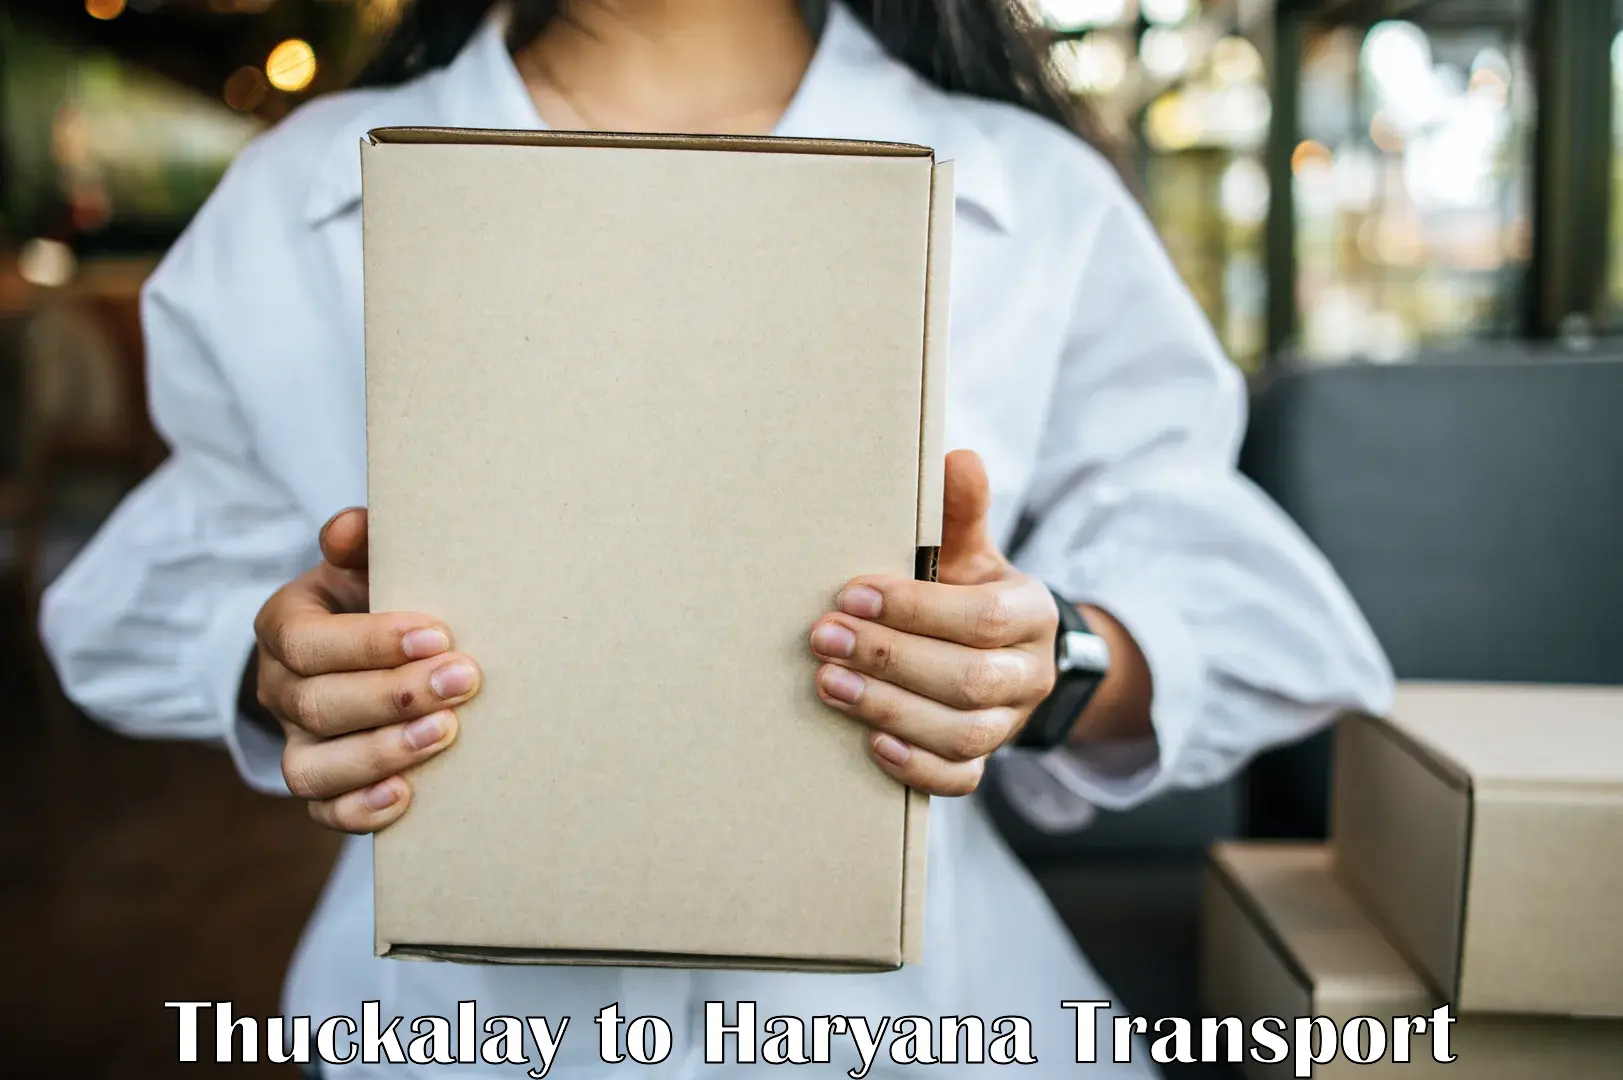 Cargo transport services Thuckalay to Haryana